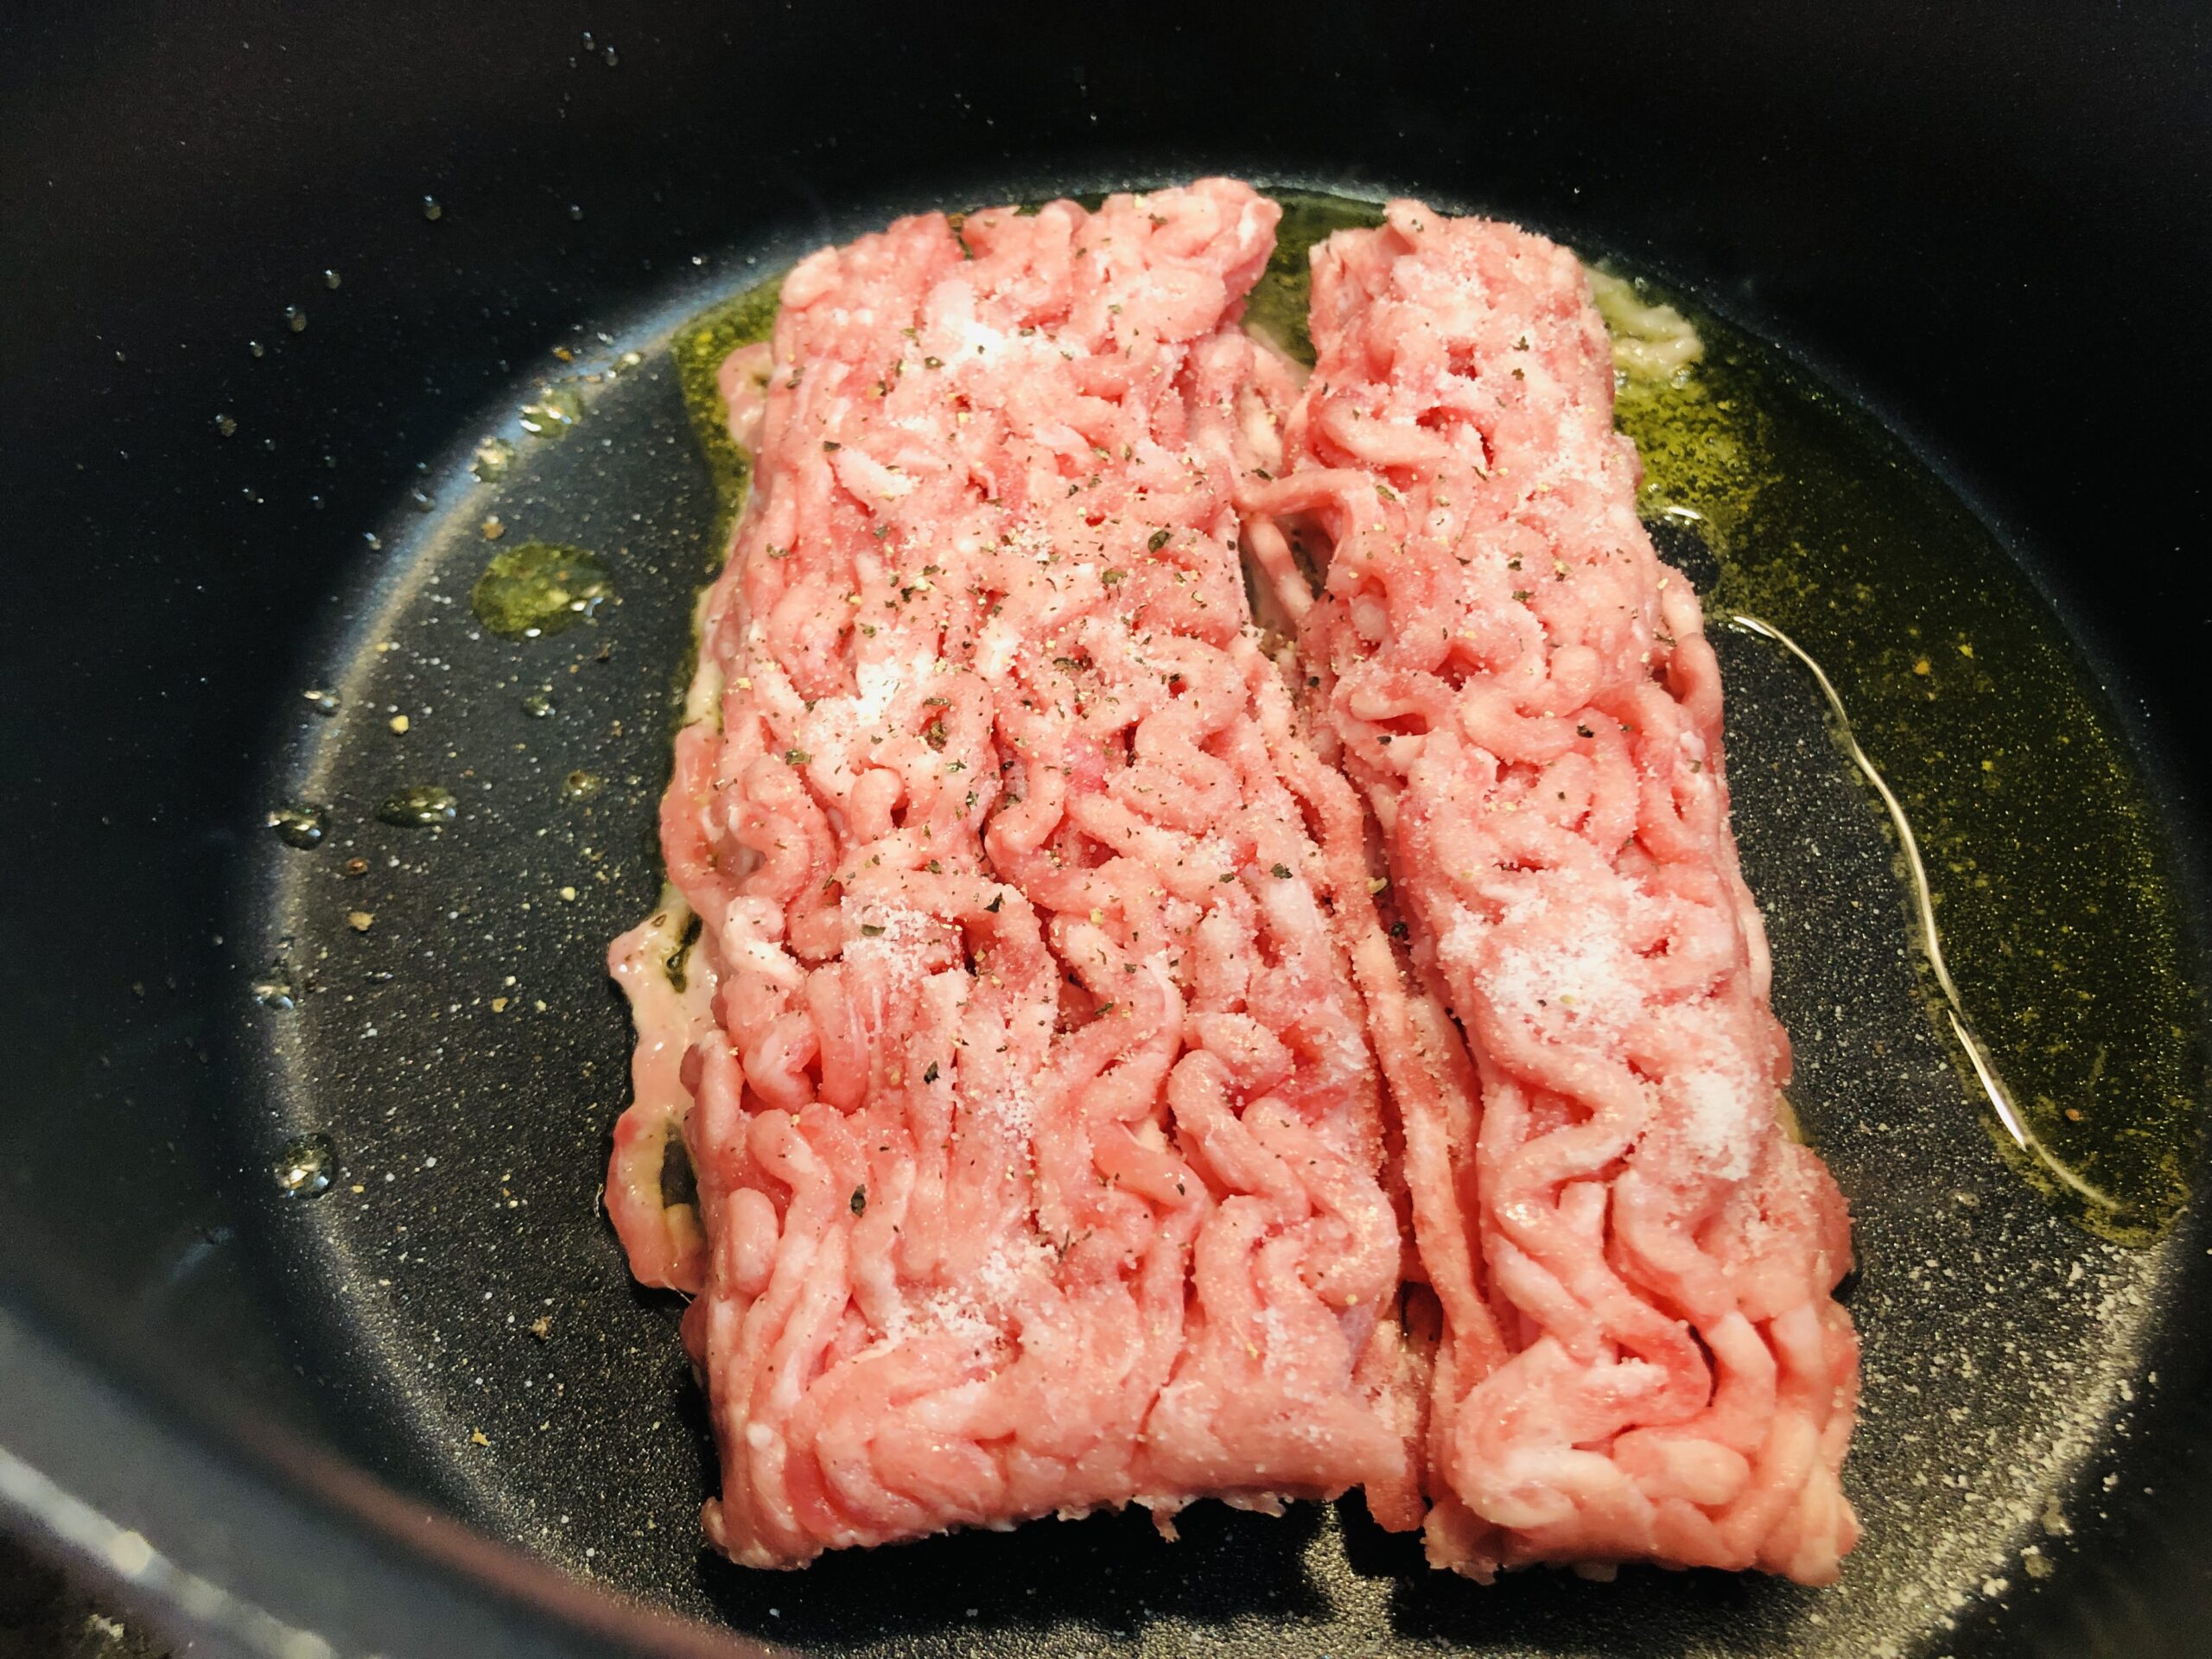 テフロン加工の鍋にオリーブオイルを引いてひき肉を入れ、塩コショウした状態の画像です